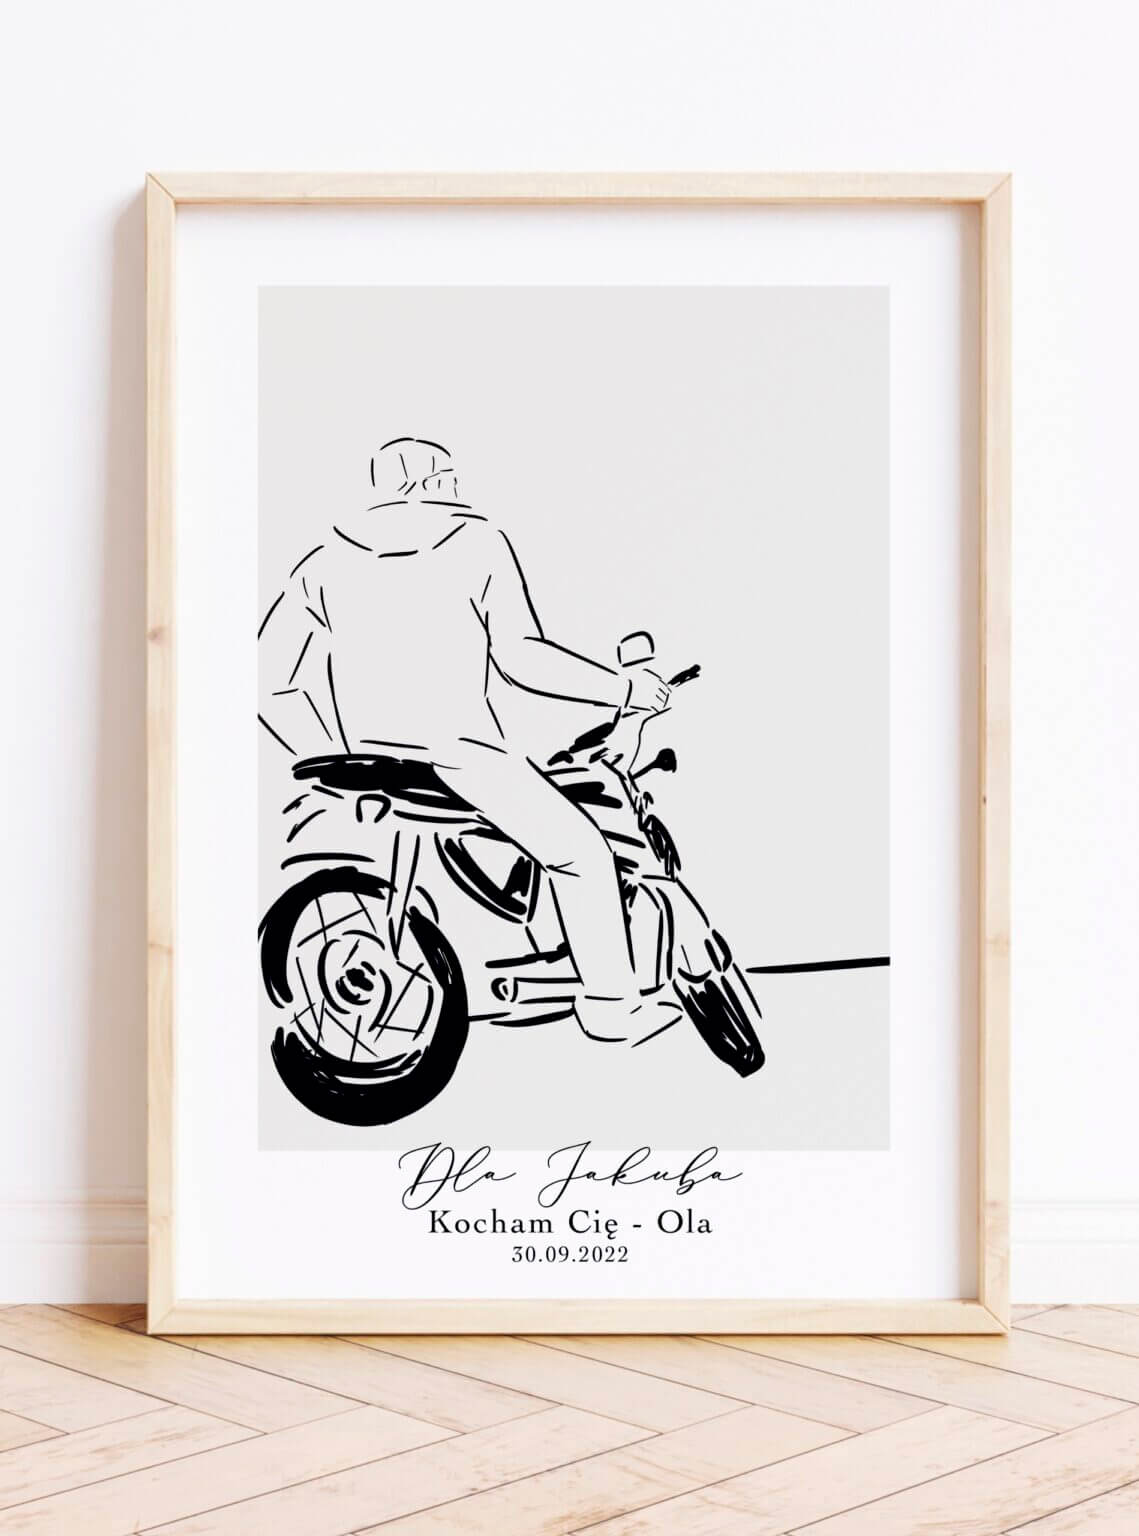 Prezent dla chłopaka fana motocykli- personalizowany obraz dla chłopaka motocyklisty